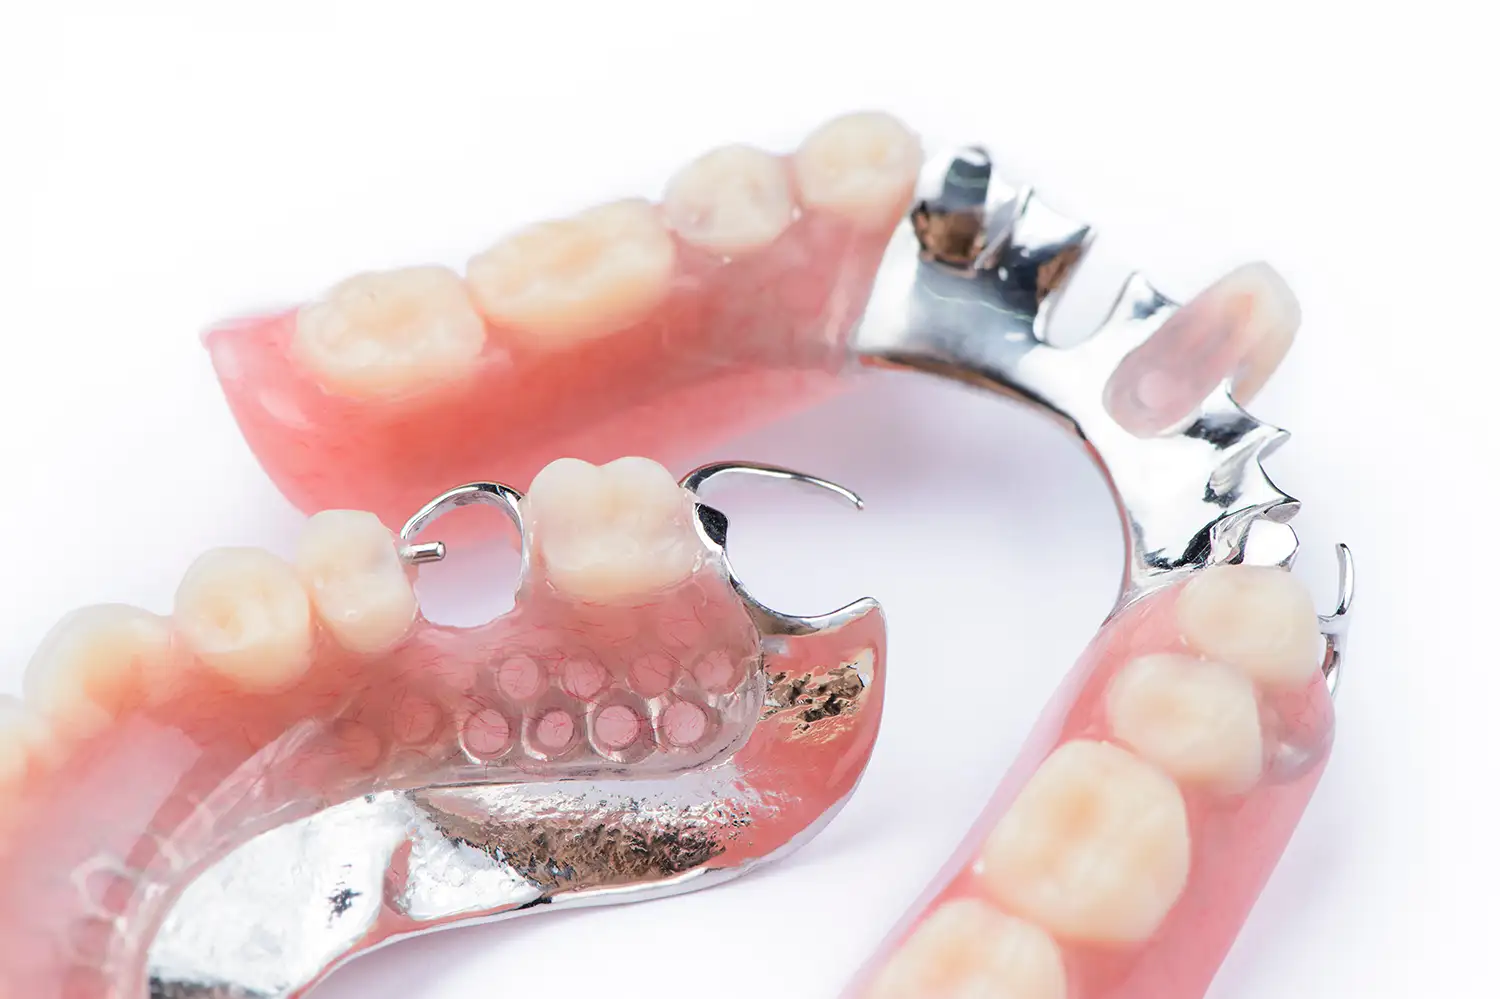 Prótesis dental parcial